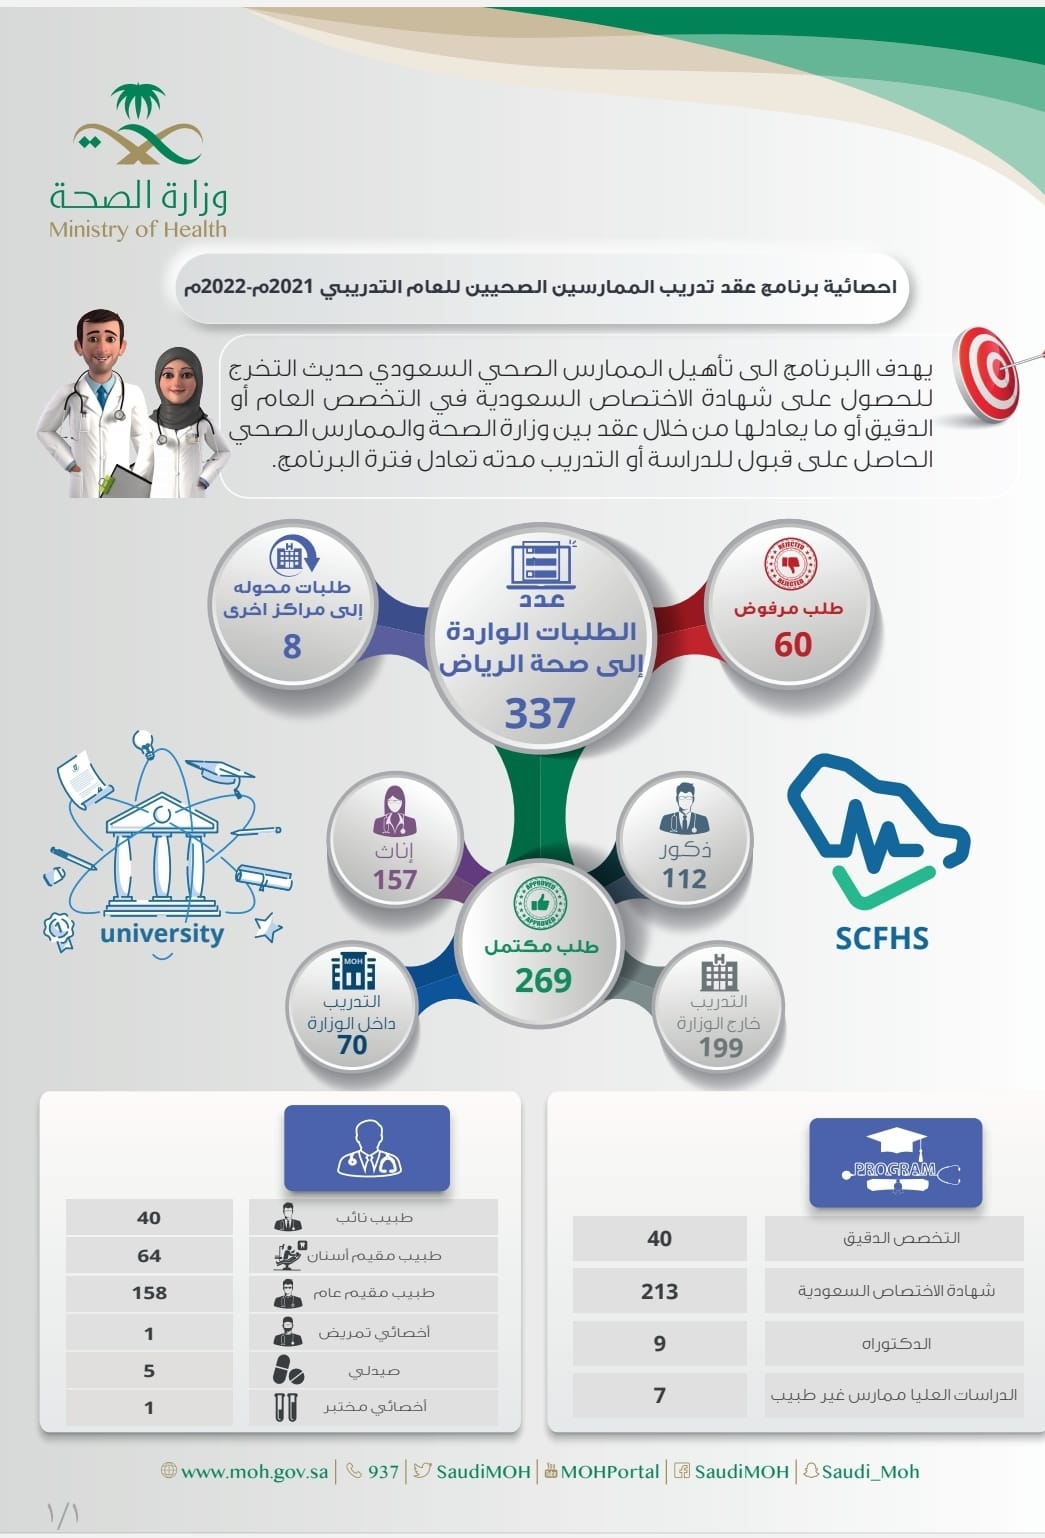 صحة “الرياض” تباشر 337 طلباً لتوقيع عقد تدريب الممارسين الصحيين